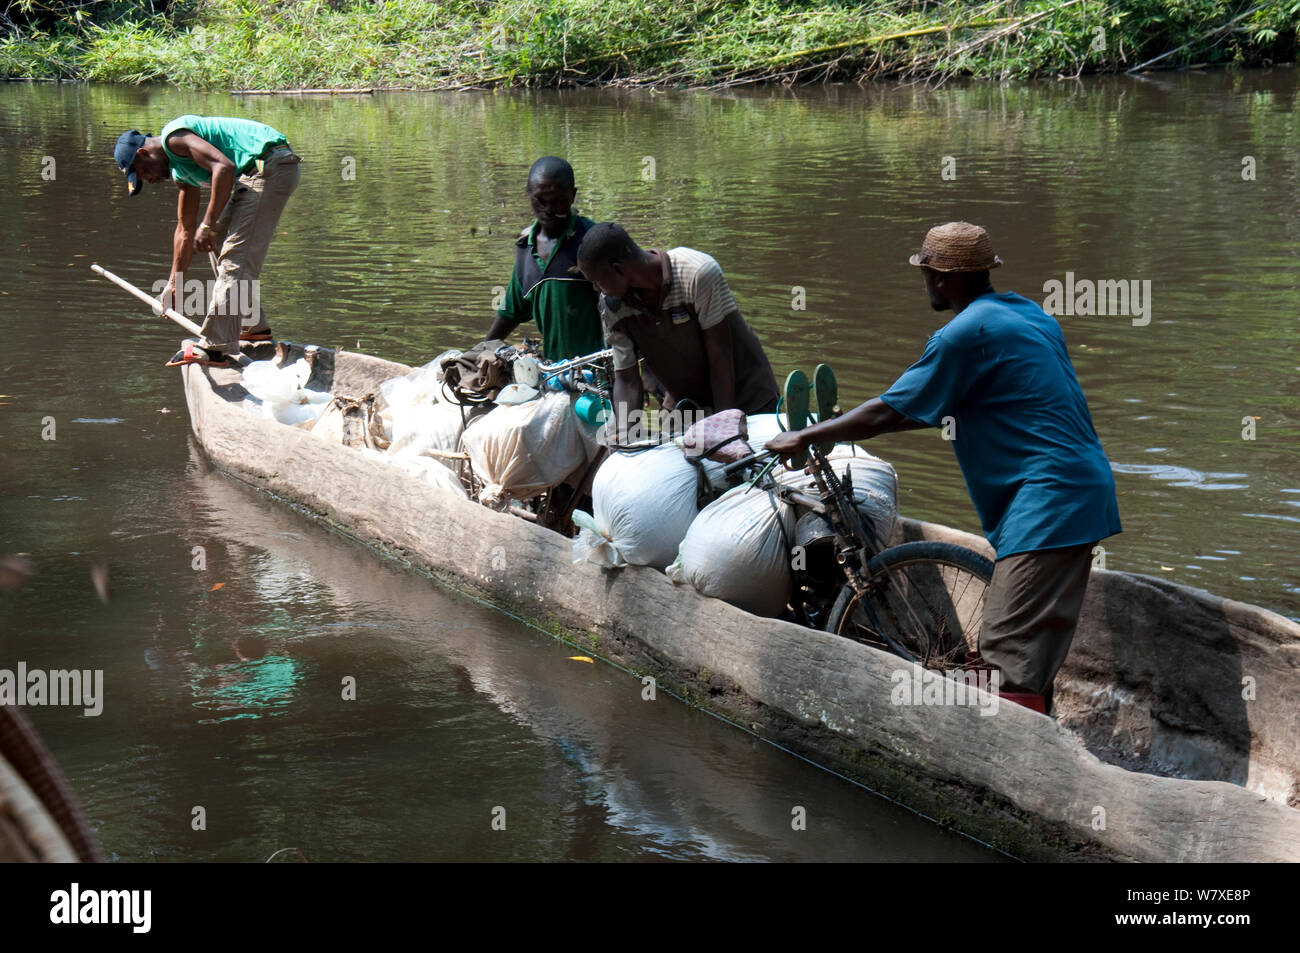 Torhüter den Transport auf Fahrrädern in Kanu für Verkehr entlang des Flusses geladen, Demokratische Republik Kongo, Afrika, Dezember 2012. Stockfoto